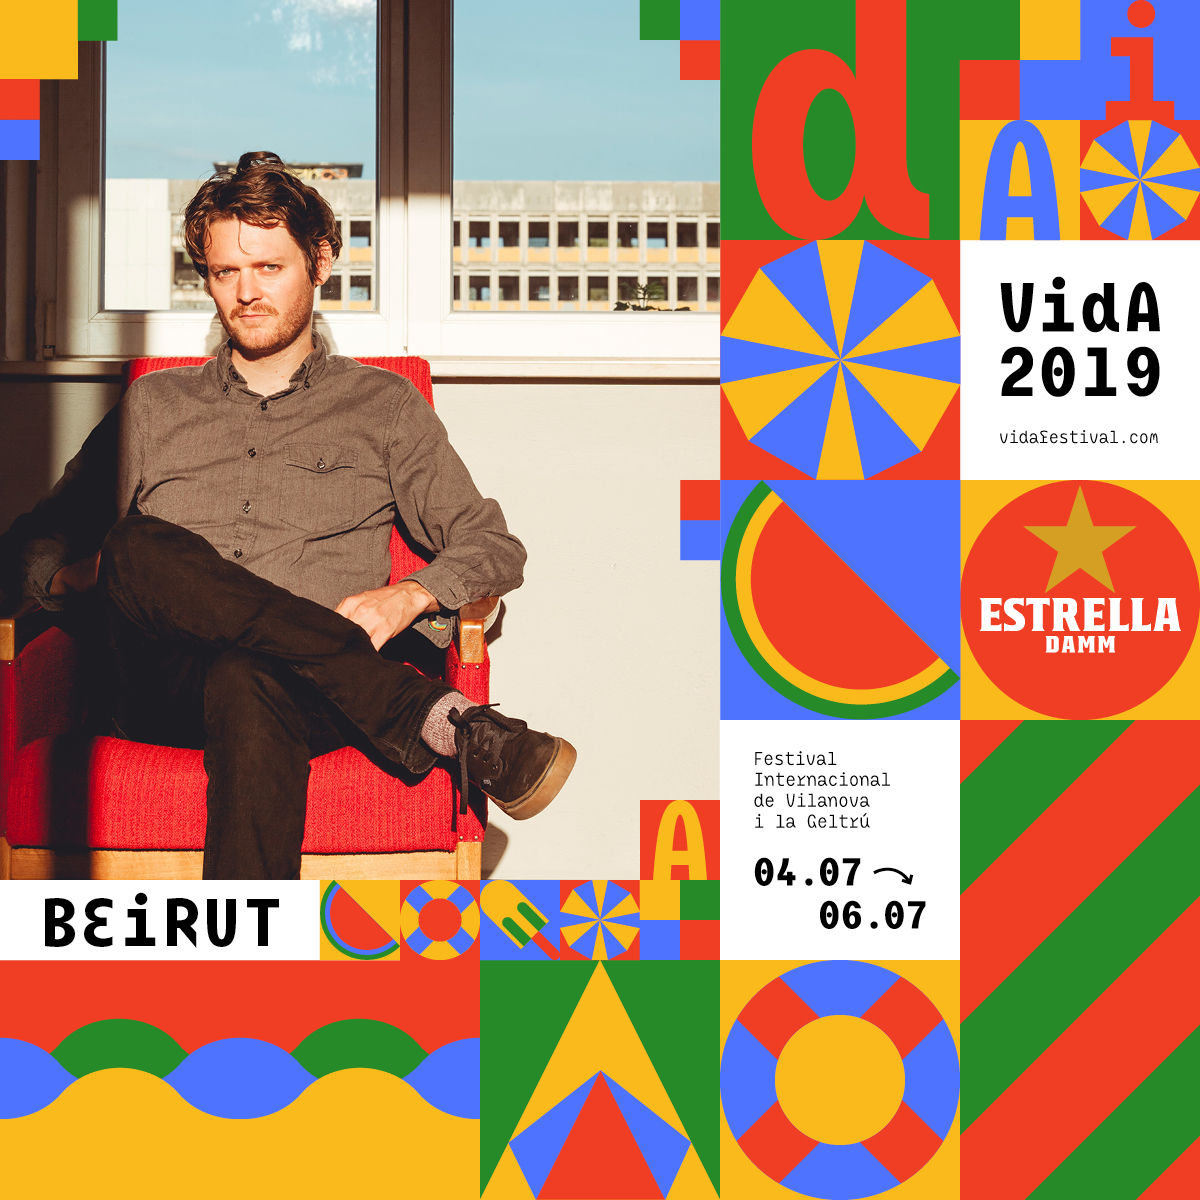 BEIRUT - VIDA FESTIVAL 2018